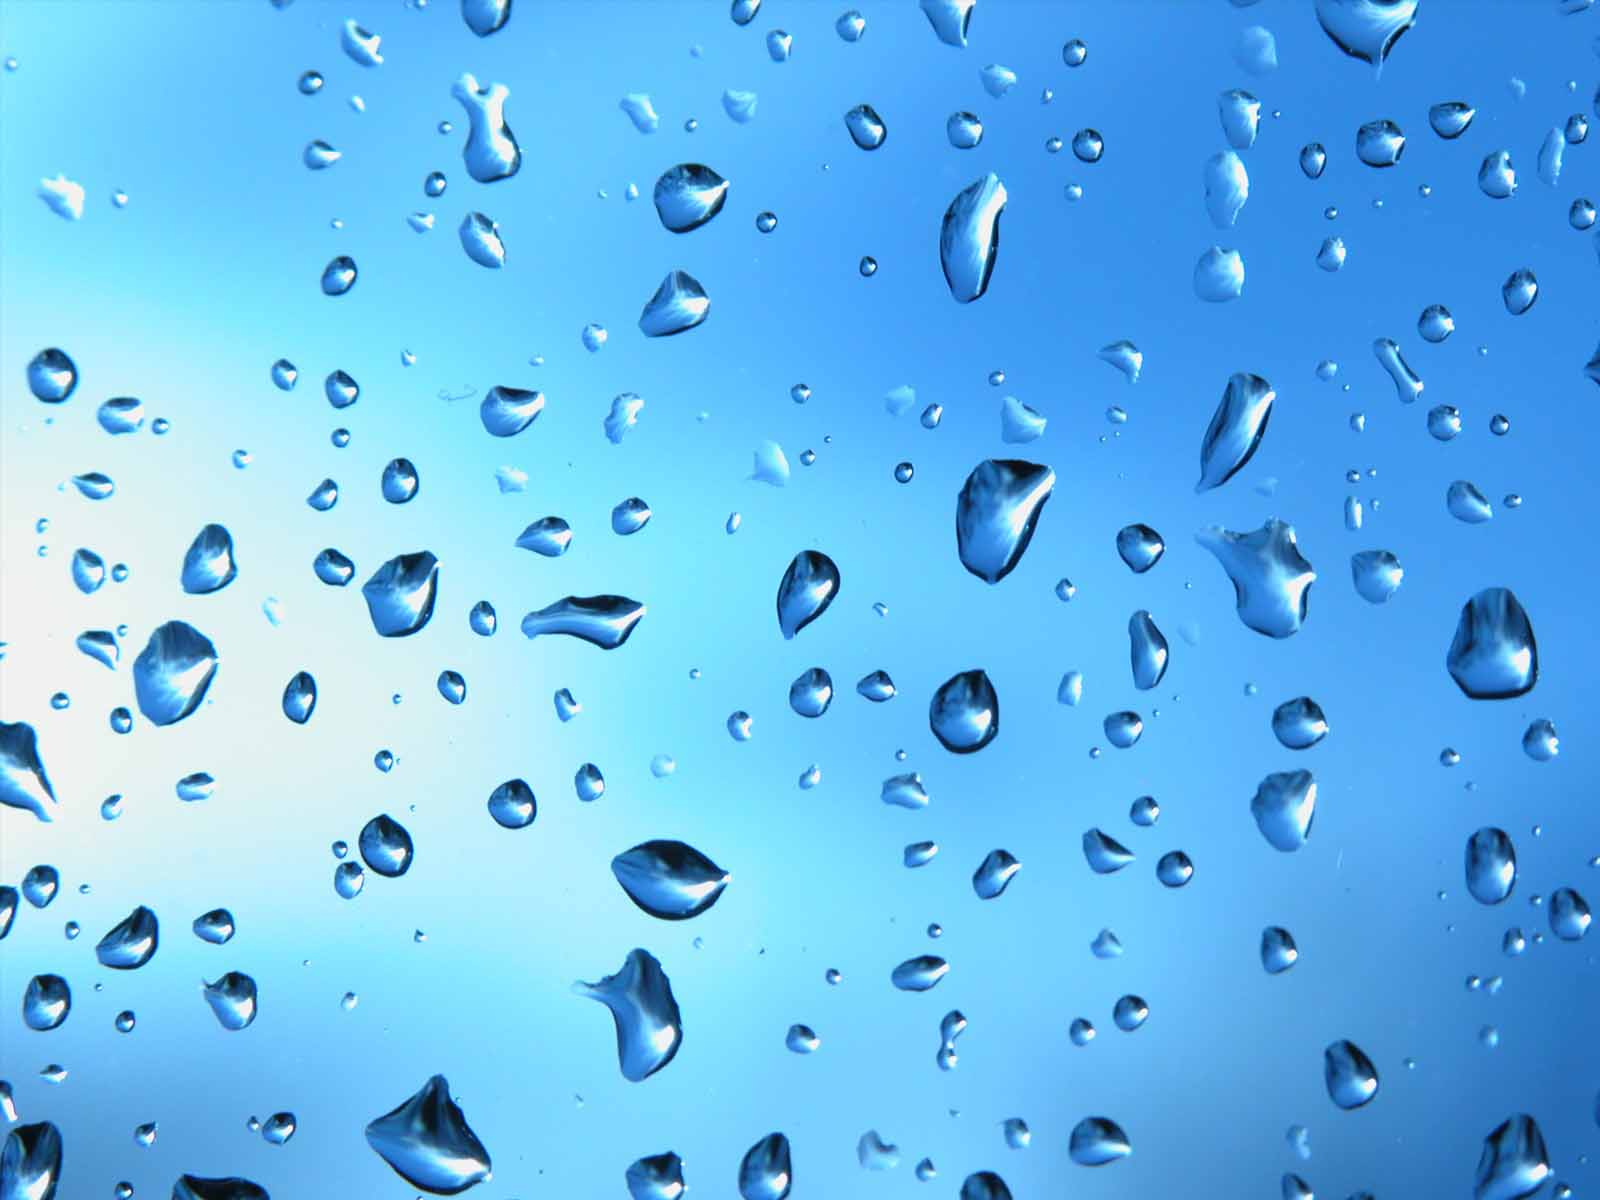 雨滴の壁紙,青い,水,落とす,水分,露